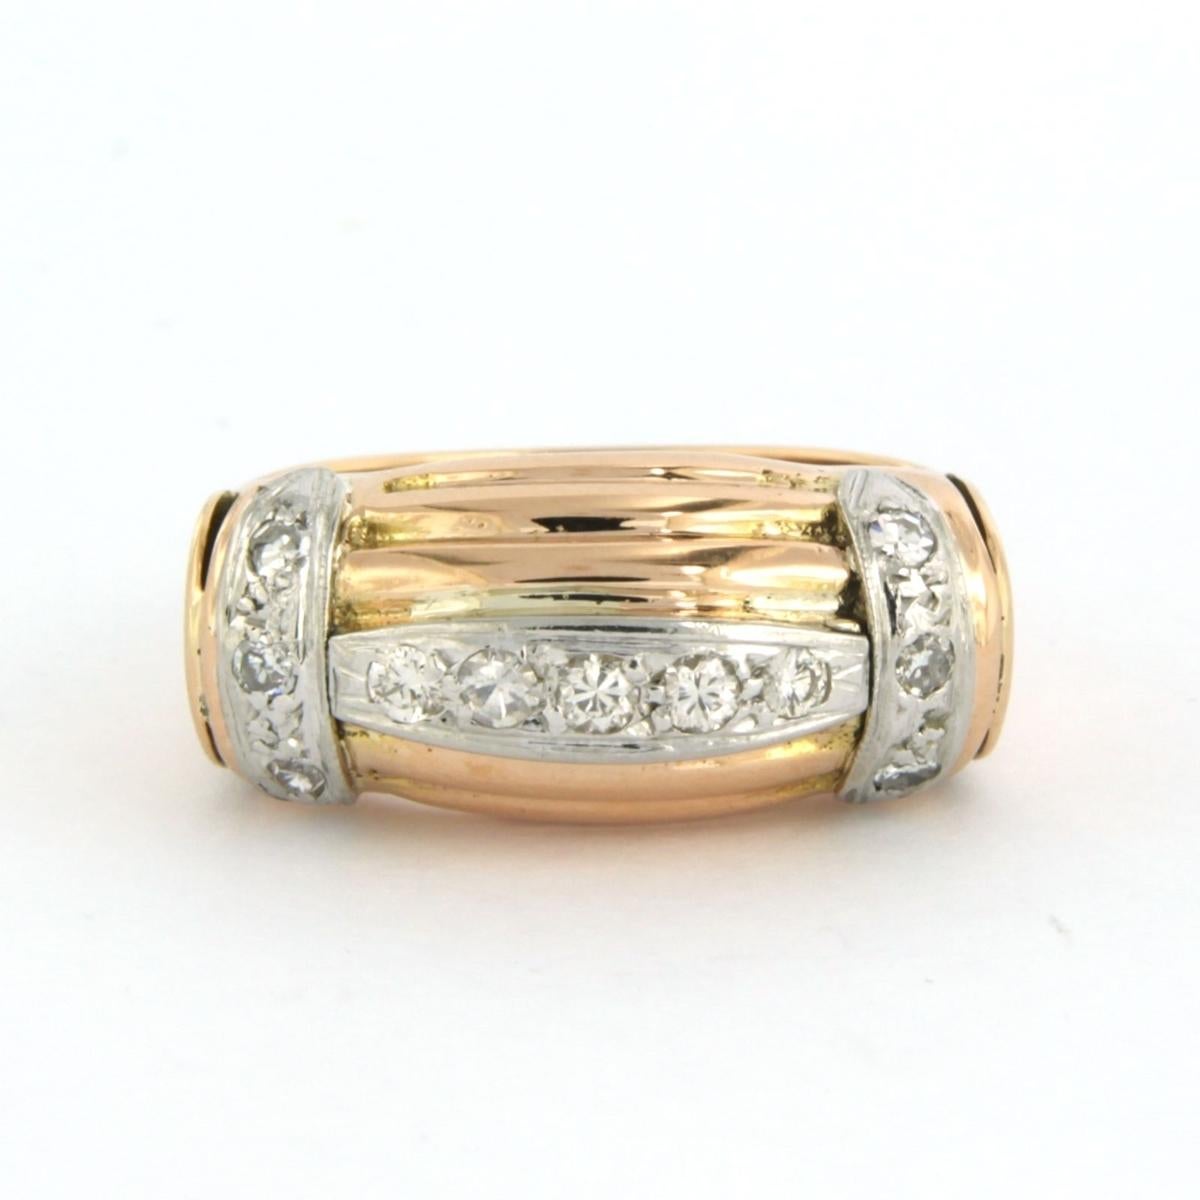 Ring aus 18 kt Bicolor-Gold, besetzt mit Diamanten im Brillantschliff und im Einzelschliff. 0,20 ct - F/G - VS/SI - Ringgröße U.S. 7.25 - EU. 17.5(55)

detaillierte Beschreibung:

die Oberseite des Rings ist 1.0 cm breit

Ringgröße U.S. 7.25 - EU.